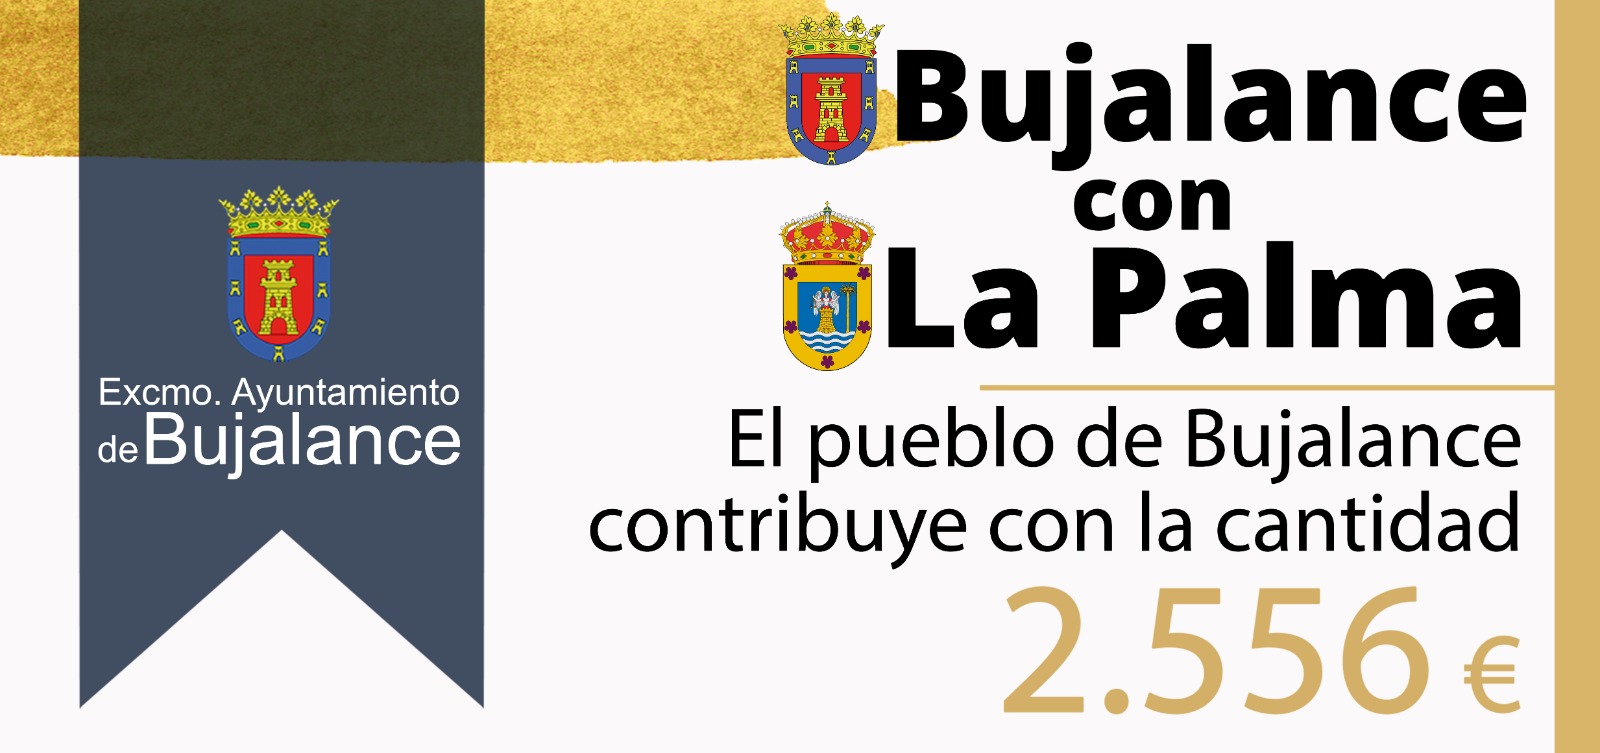 Campaña de apoyo "Bujalance con La Palma"